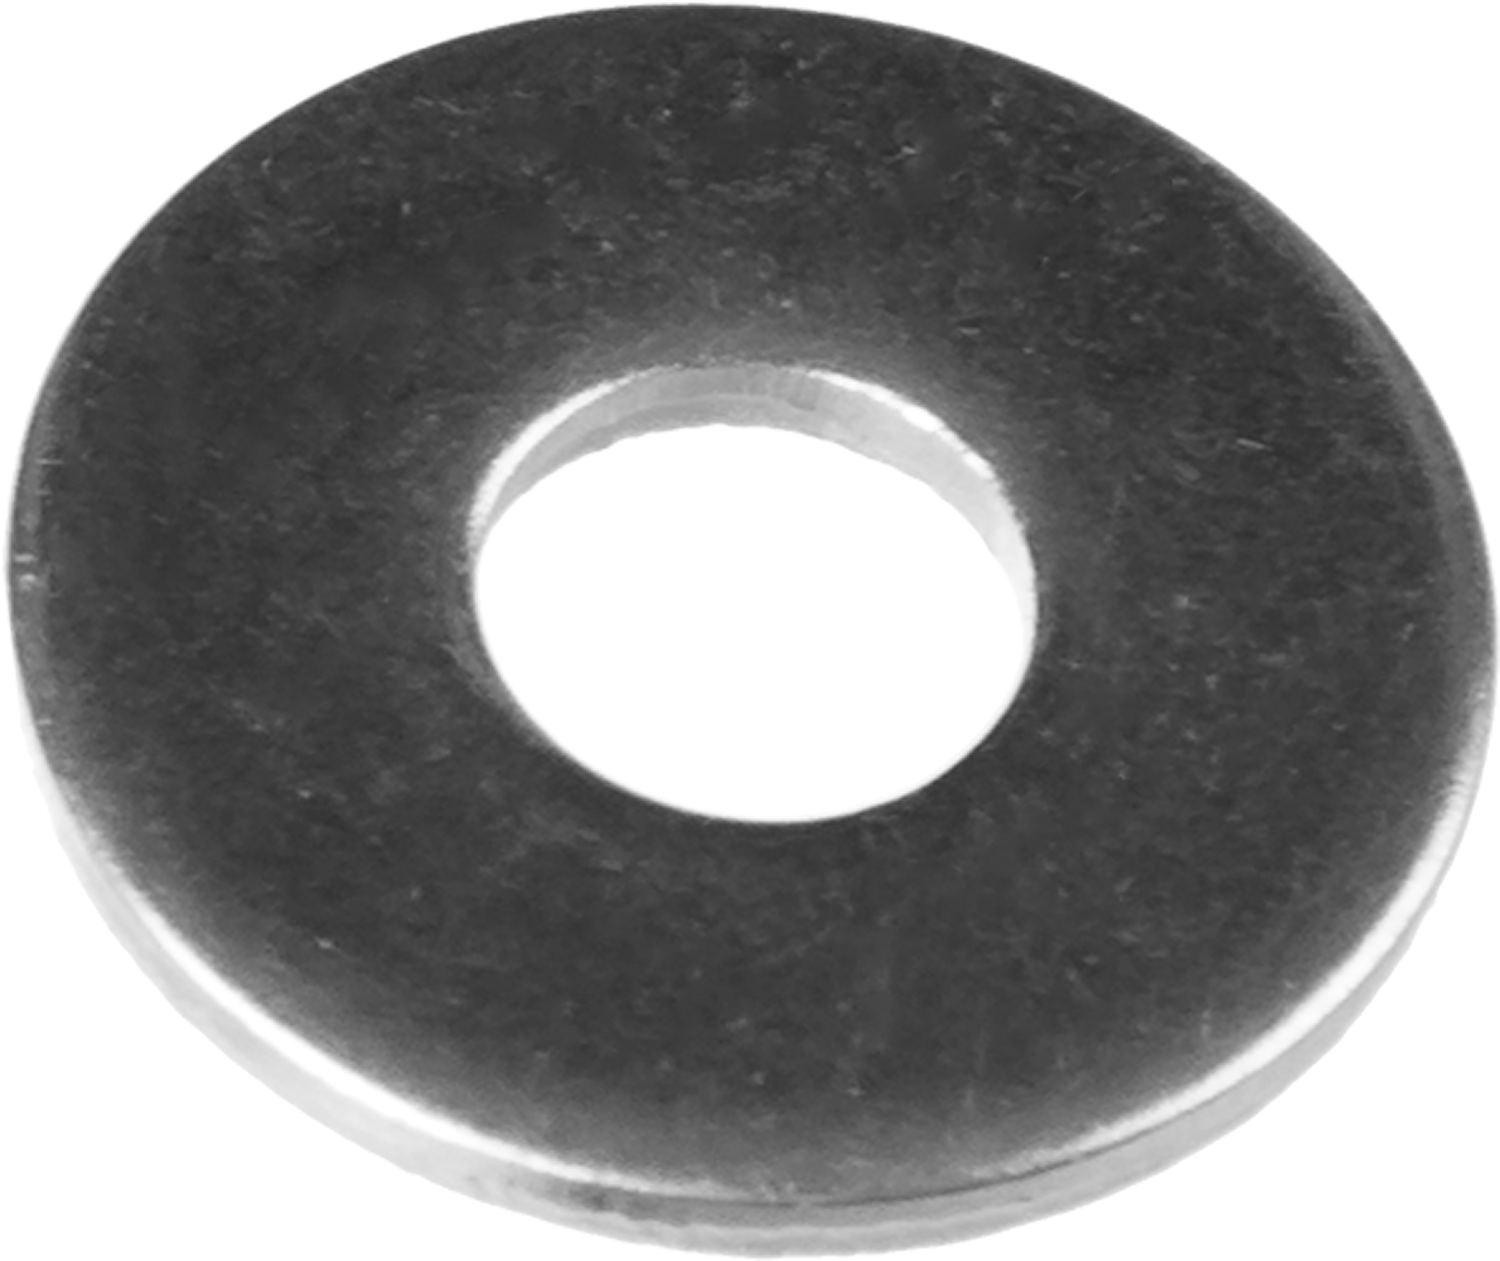 Шайба кузовная Зубр, 9021 DIN, 1.4 см, оцинкованная сталь, фасовка 5 кг (303820-14)